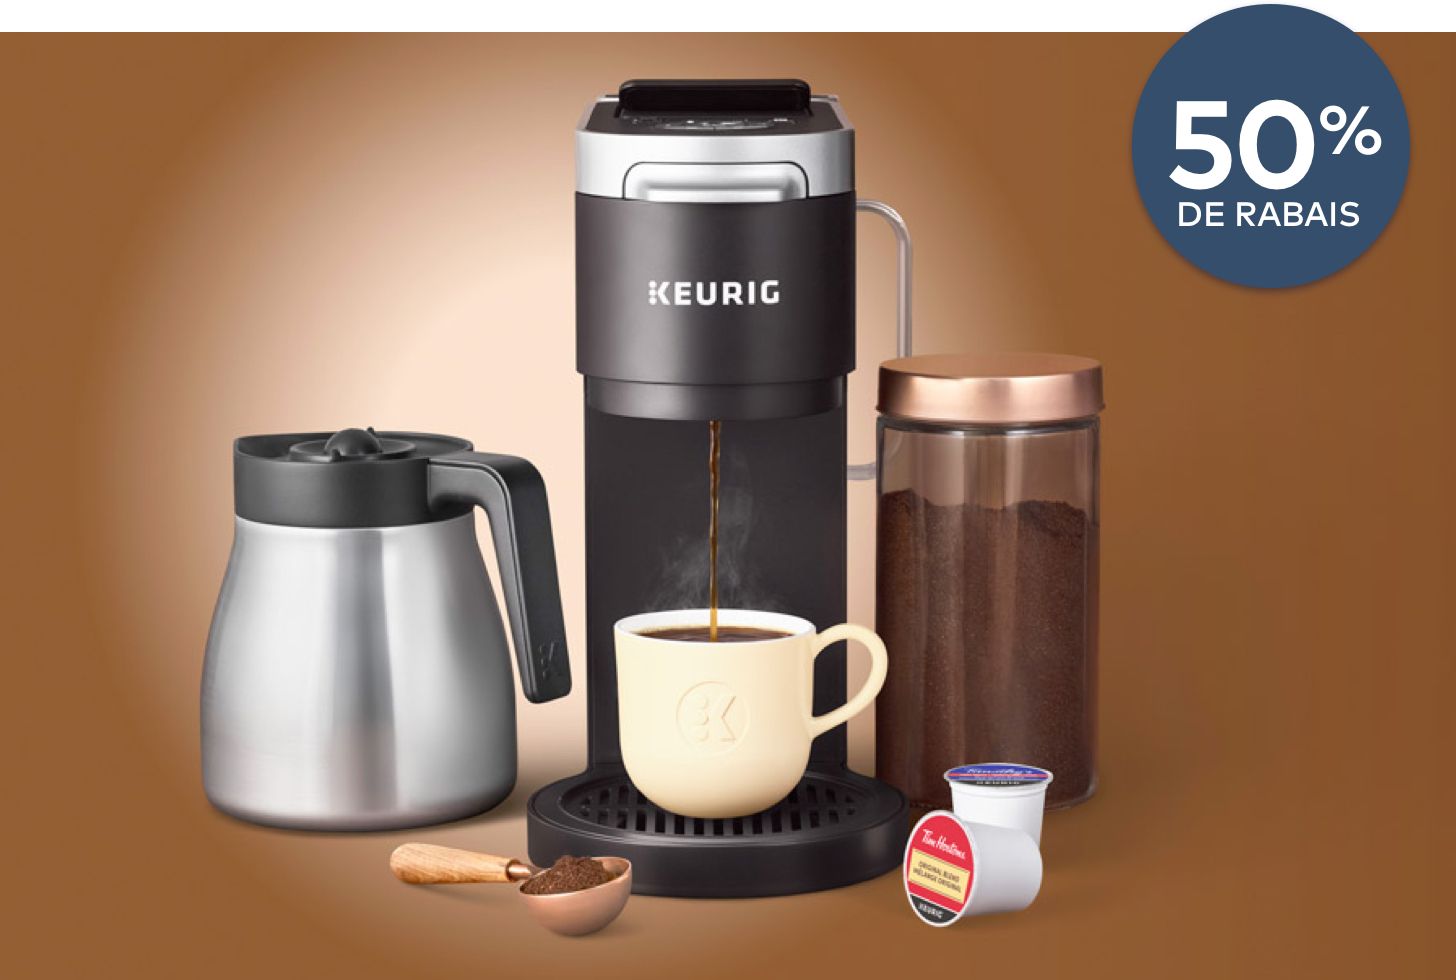 L'image montre un kit de démarrage de cafetière Keurig avec une tasse de café et une cuillère à côté